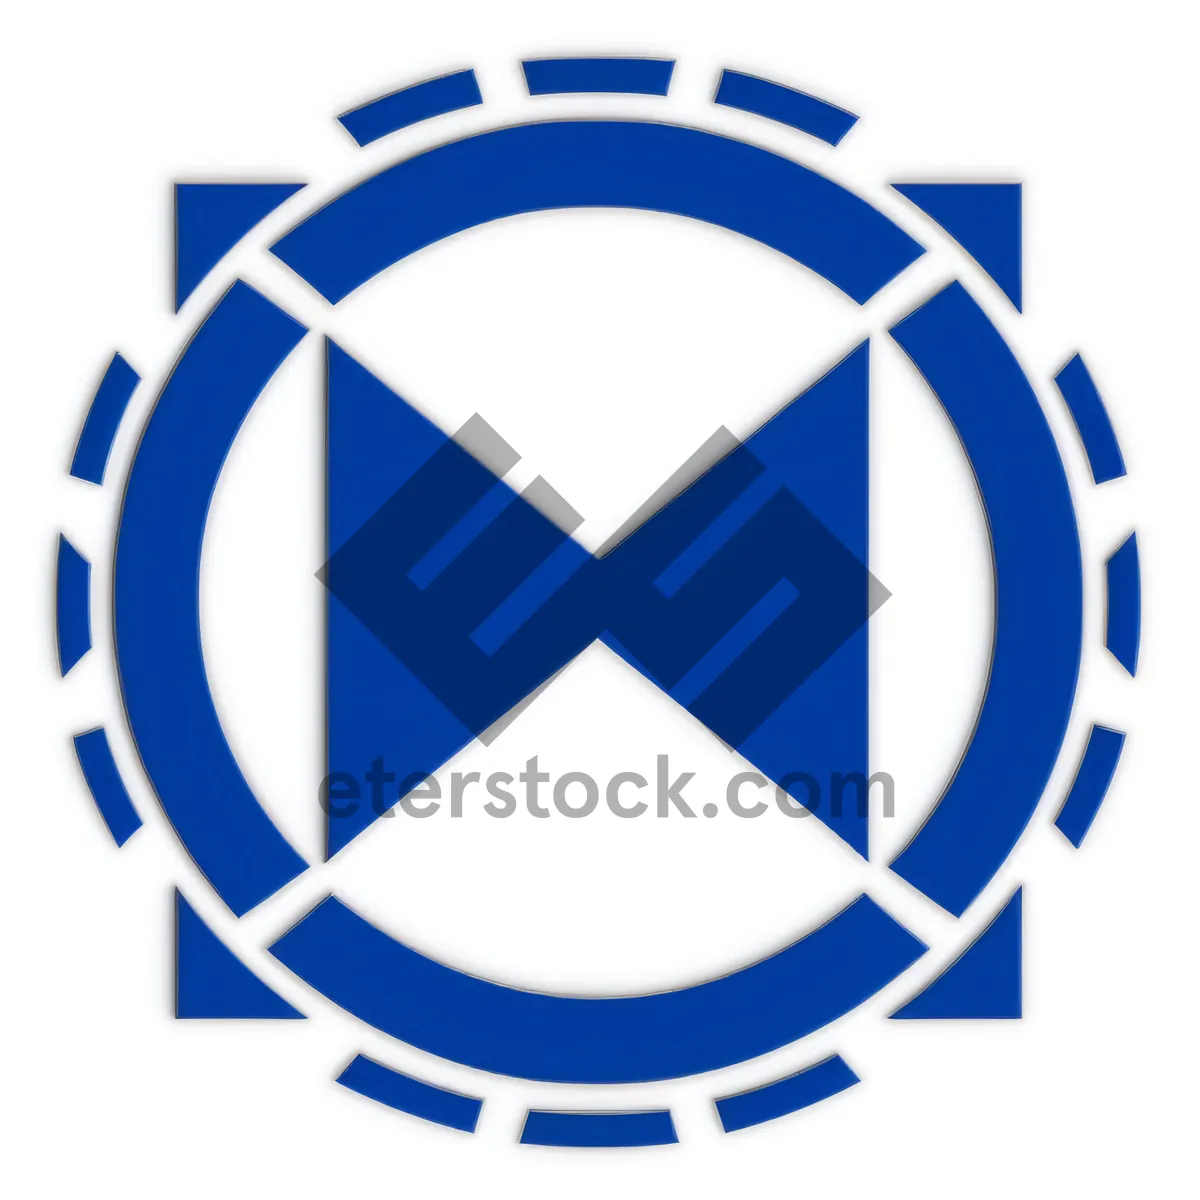 Heraldic Symbol in Circular Graphic Design